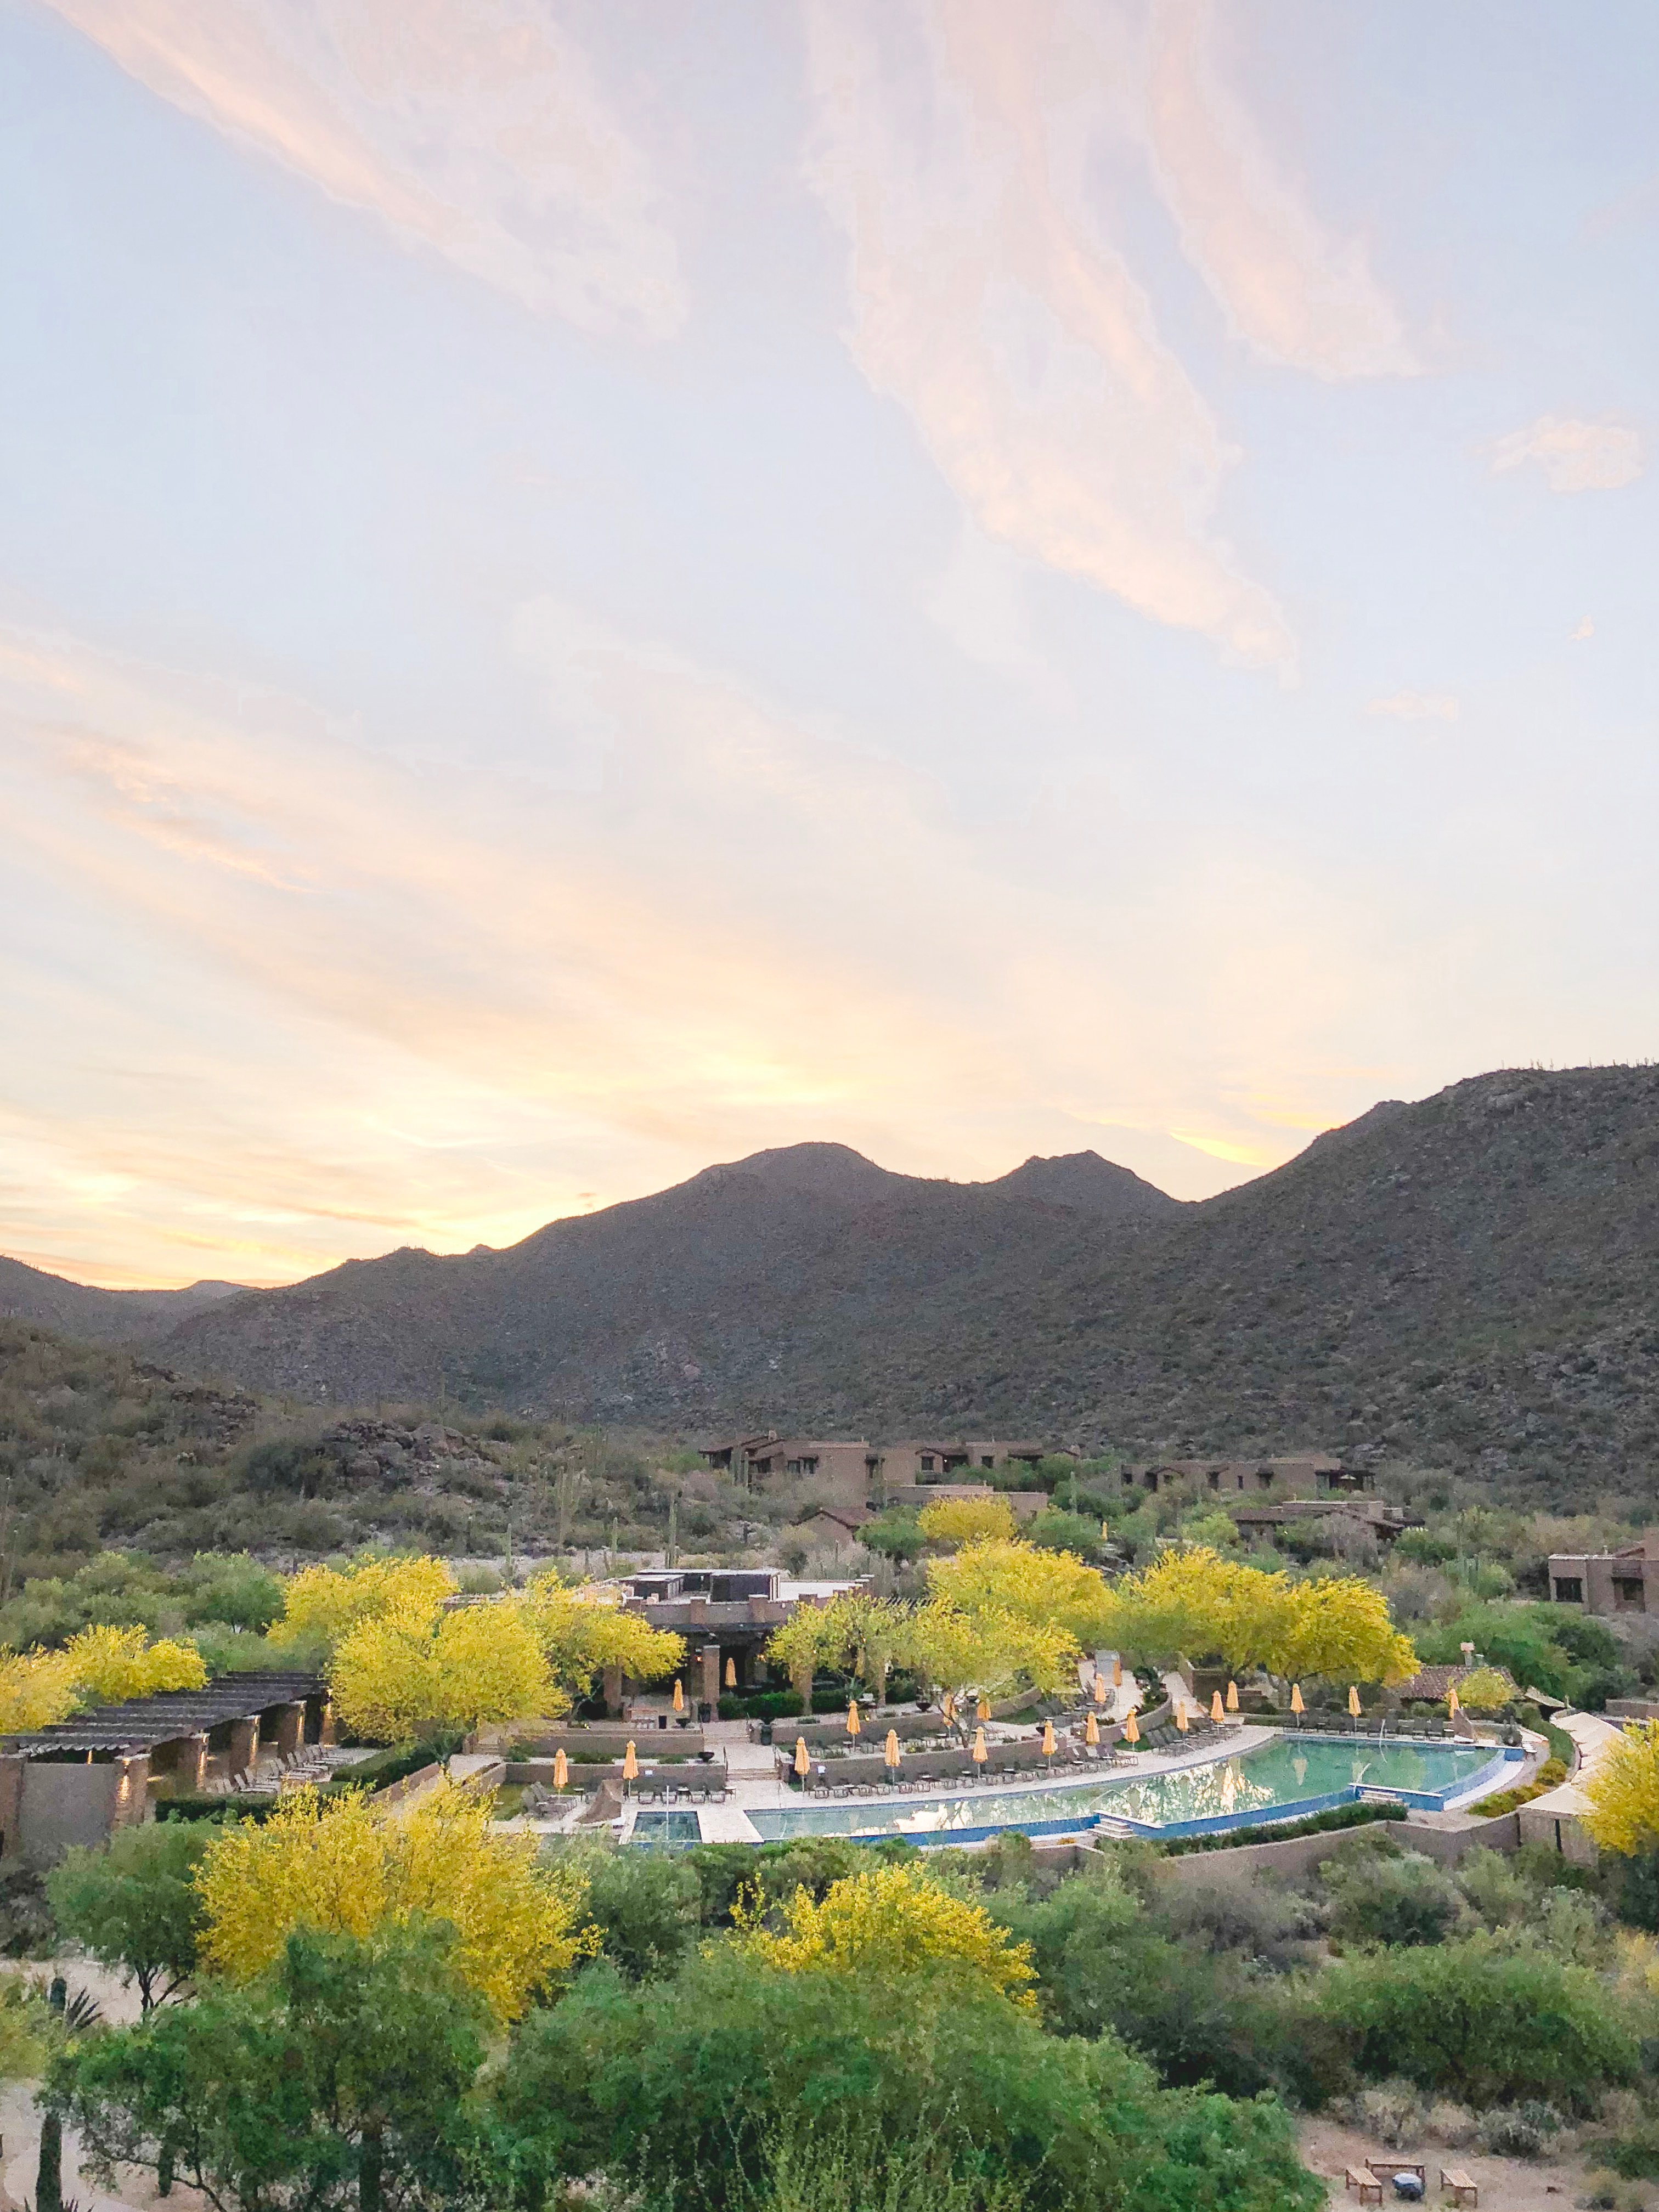 The Ritz Carlton, Dove Mountain <h2> Tucson, AZ<h2>